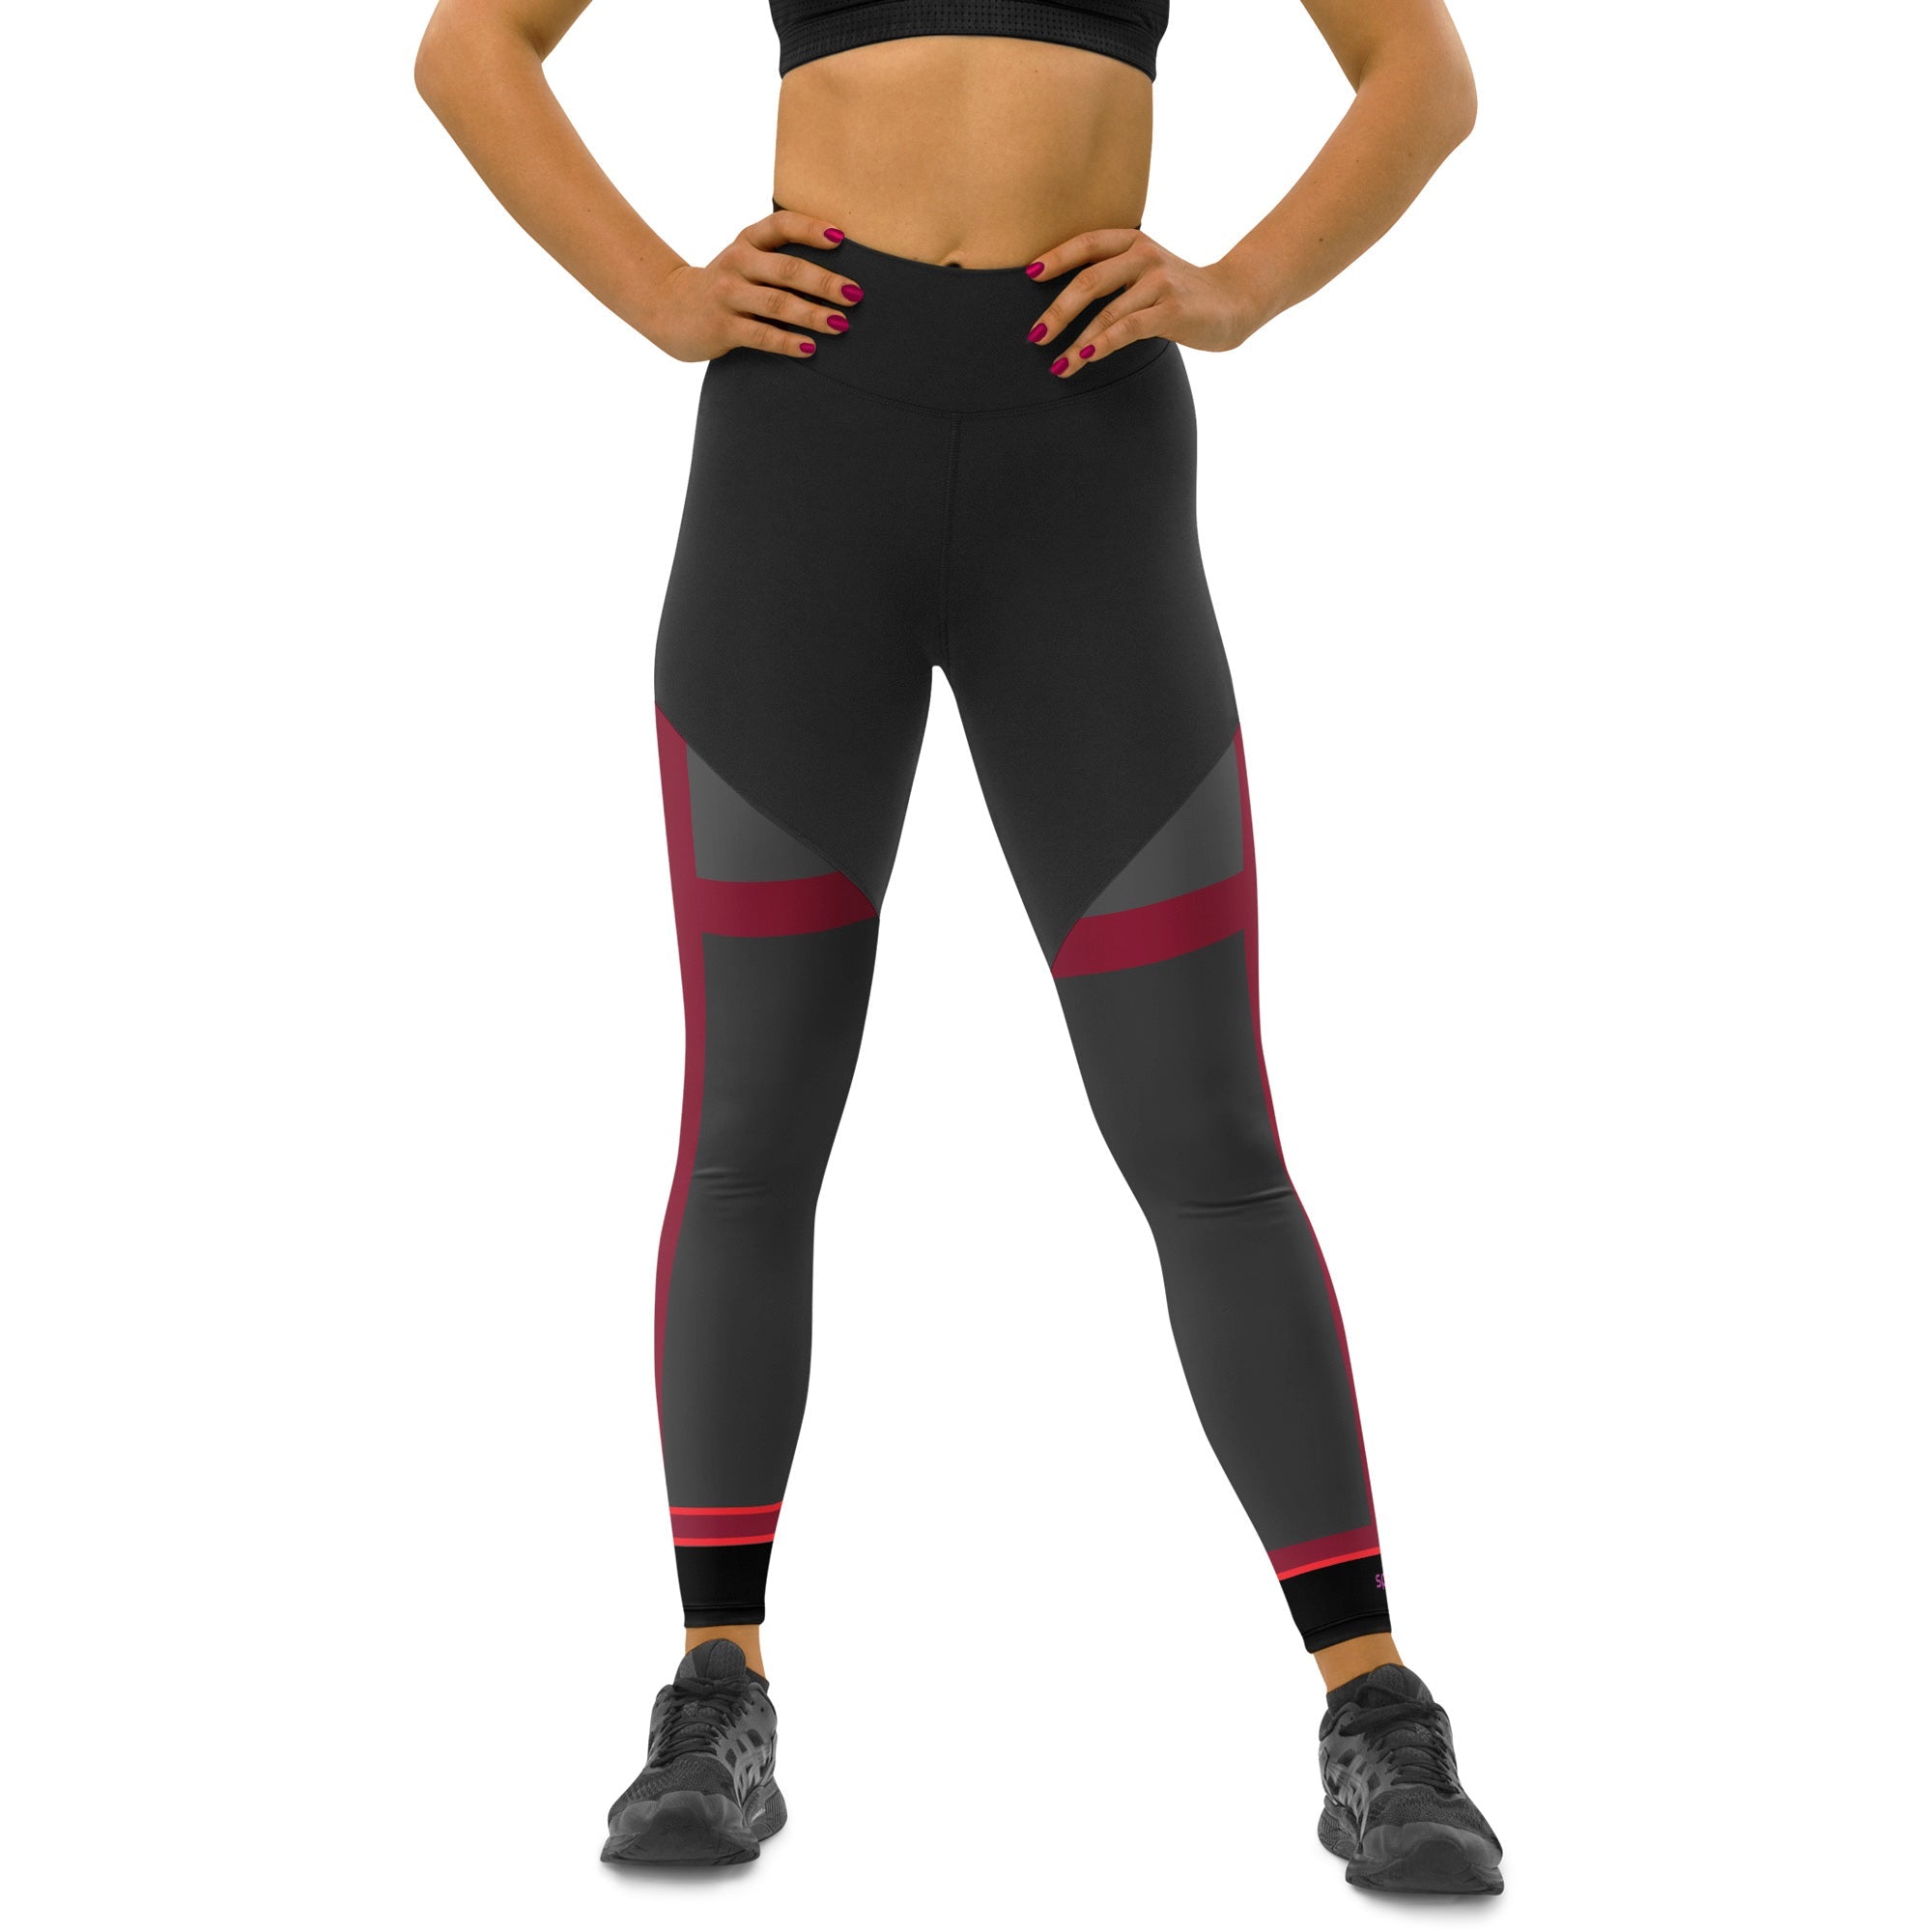 Women's X3 Performance leggings